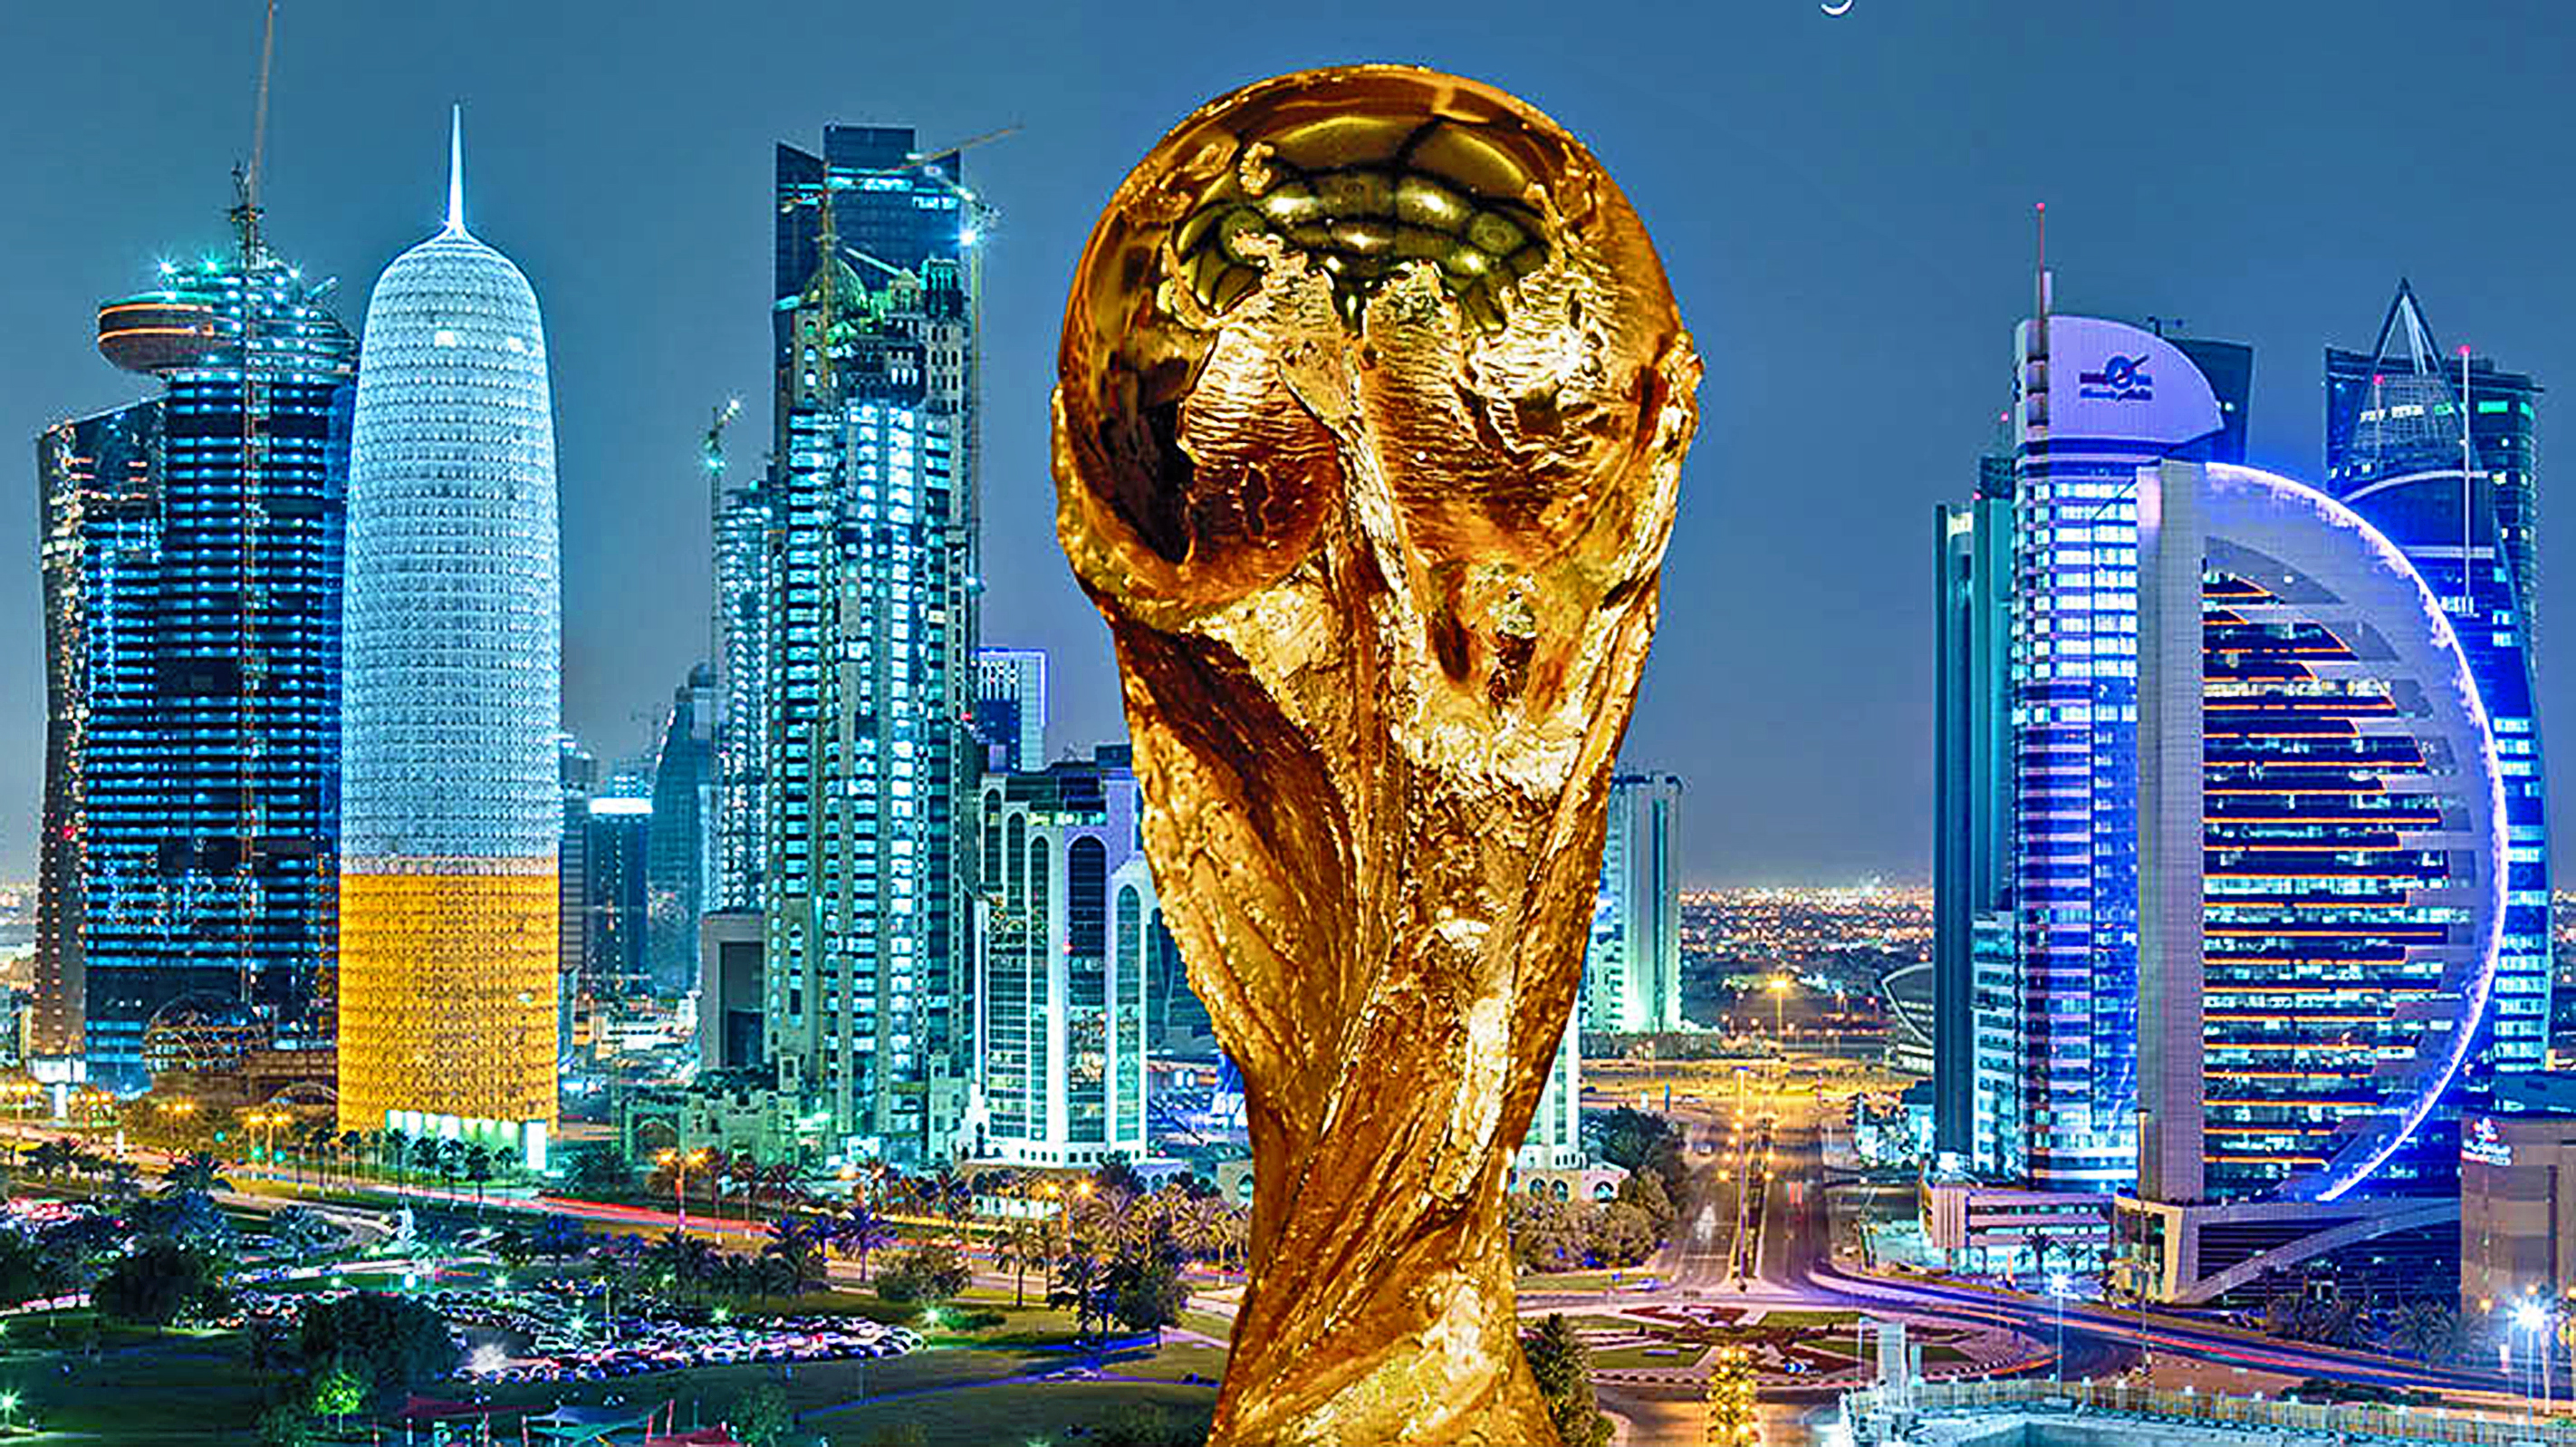 
Катар на пути к чемпионату мира по футболу